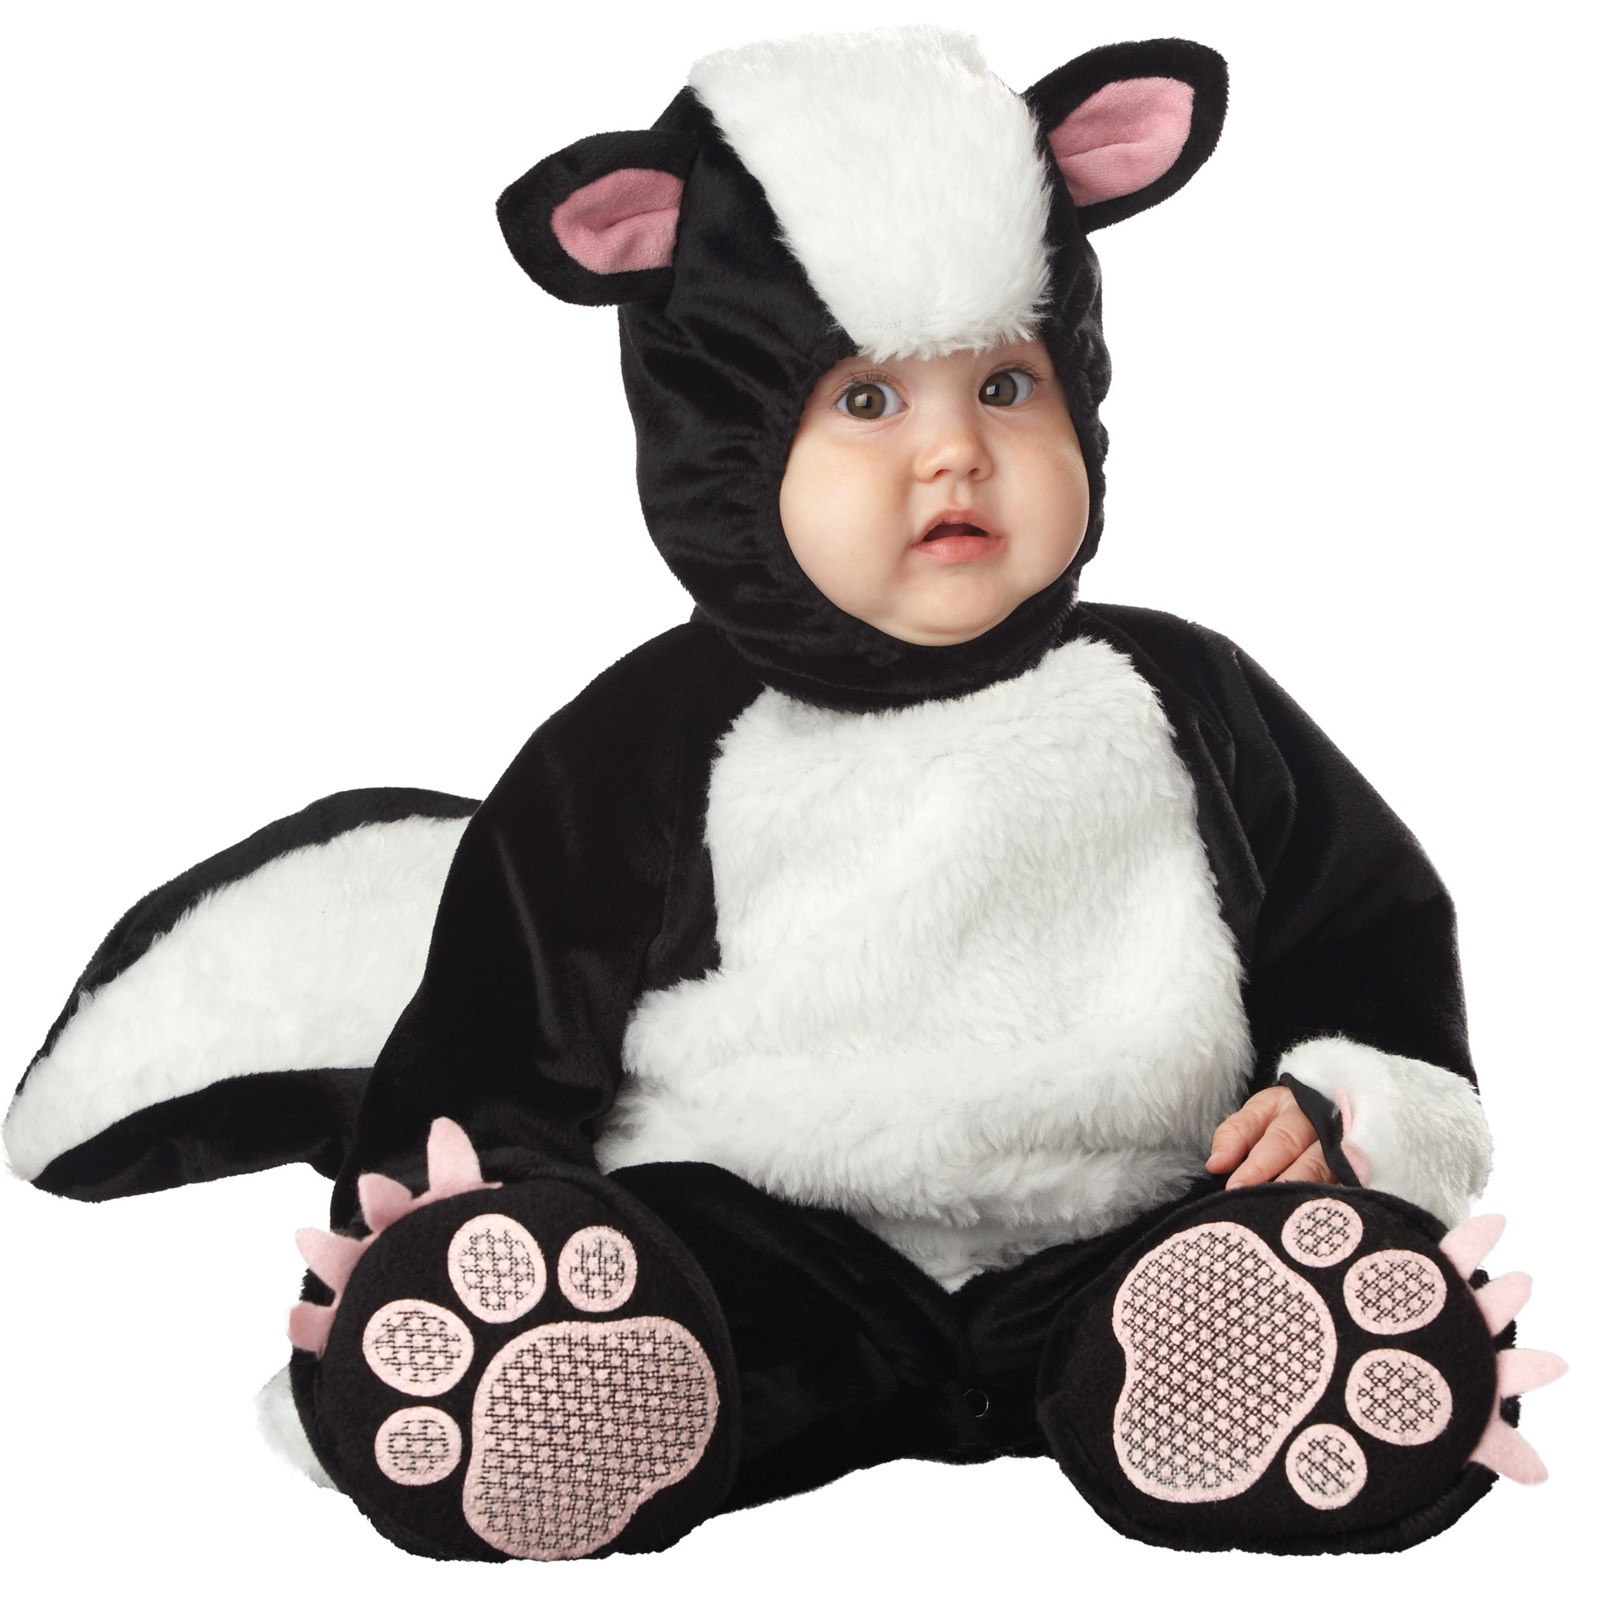 Lil Stinker Elite Collection Infant / Toddler Costume